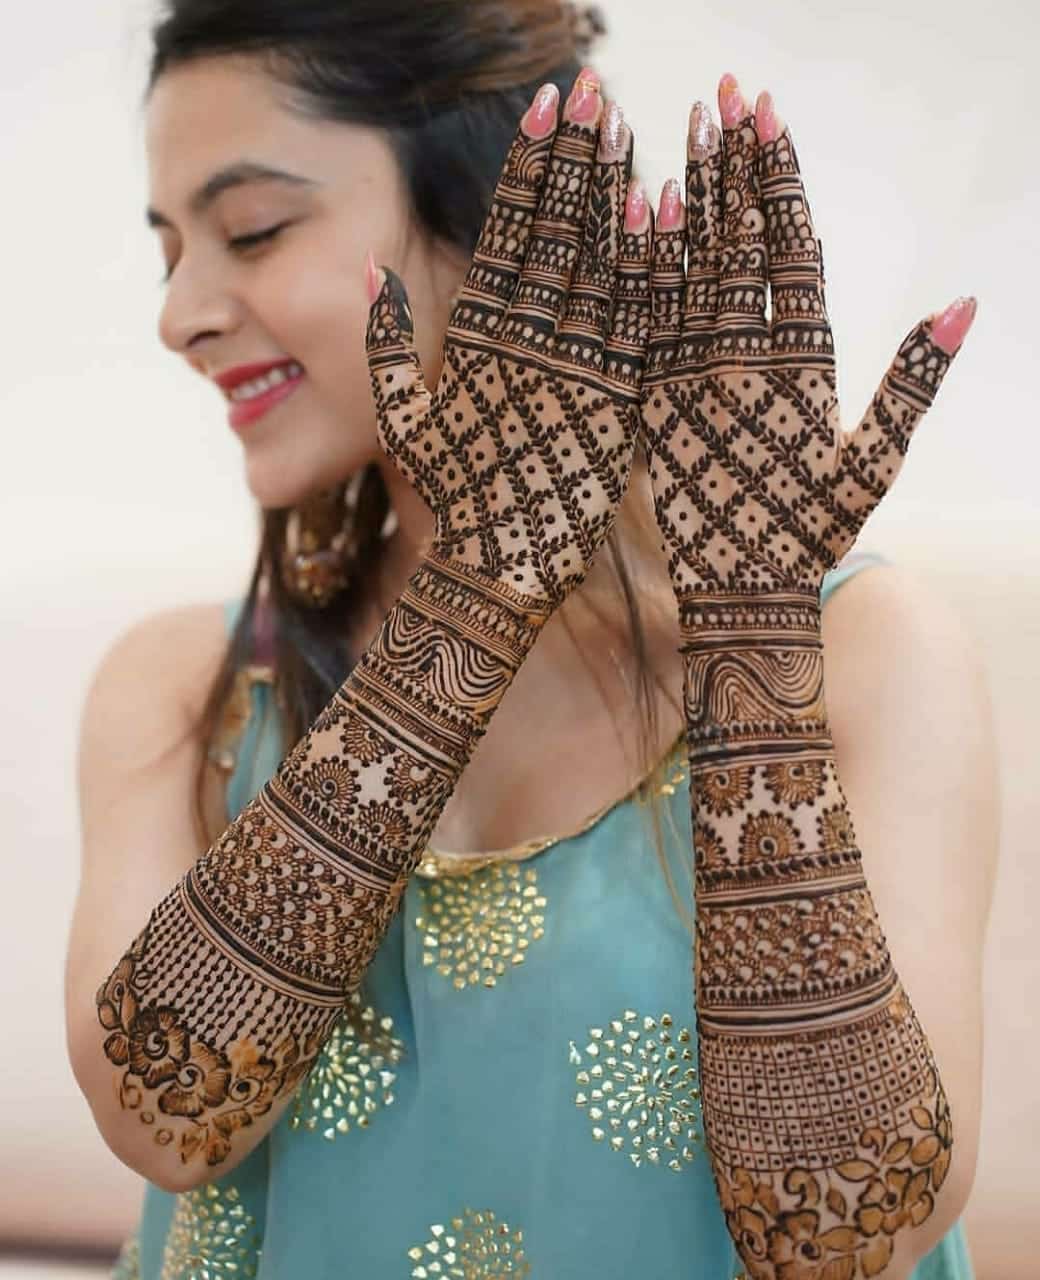 Easy Mehndi Design for Marriage : शादी के लिए ये आसान दुल्हन मेहंदी डिजाइन  रचाकर बढ़ाएं अपने हाथों की खूबसूरती, देखें वीडियो | 🛍️ LatestLY हिन्दी